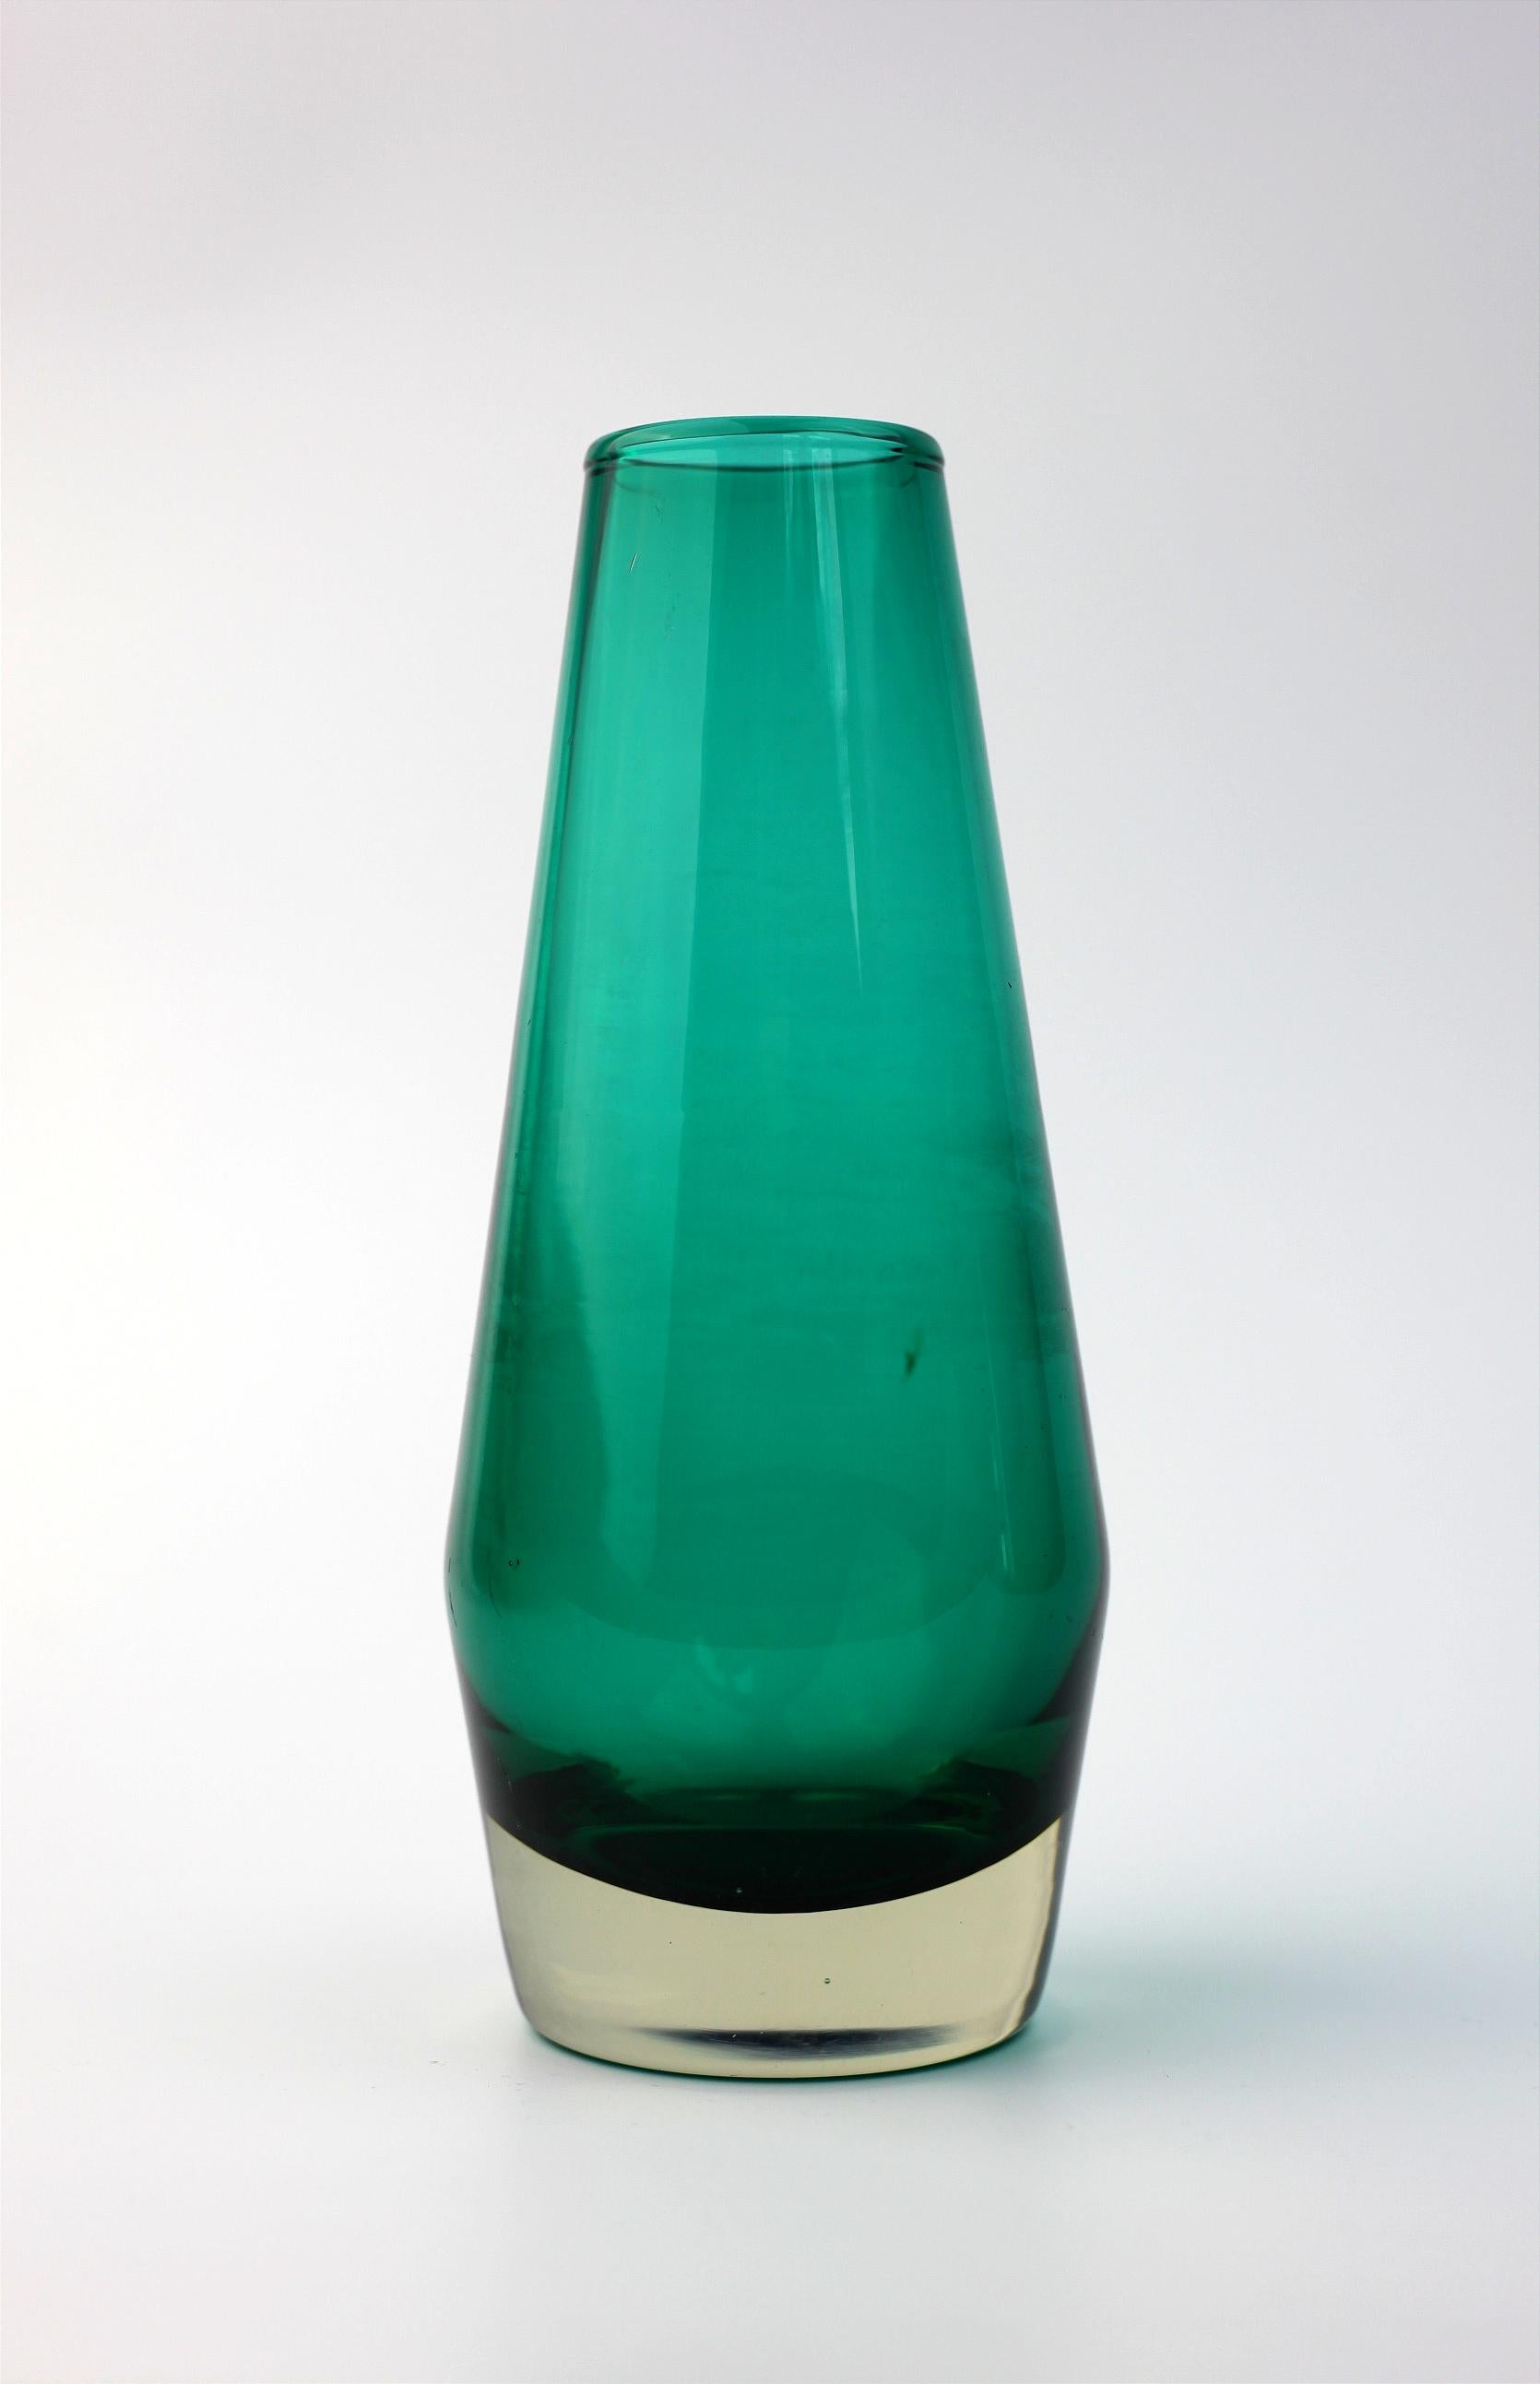 Joli vase en verre turquoise de Tamara Aladin de Finlande

Il mesure environ 16 cm de haut 
et 7 cm de large.